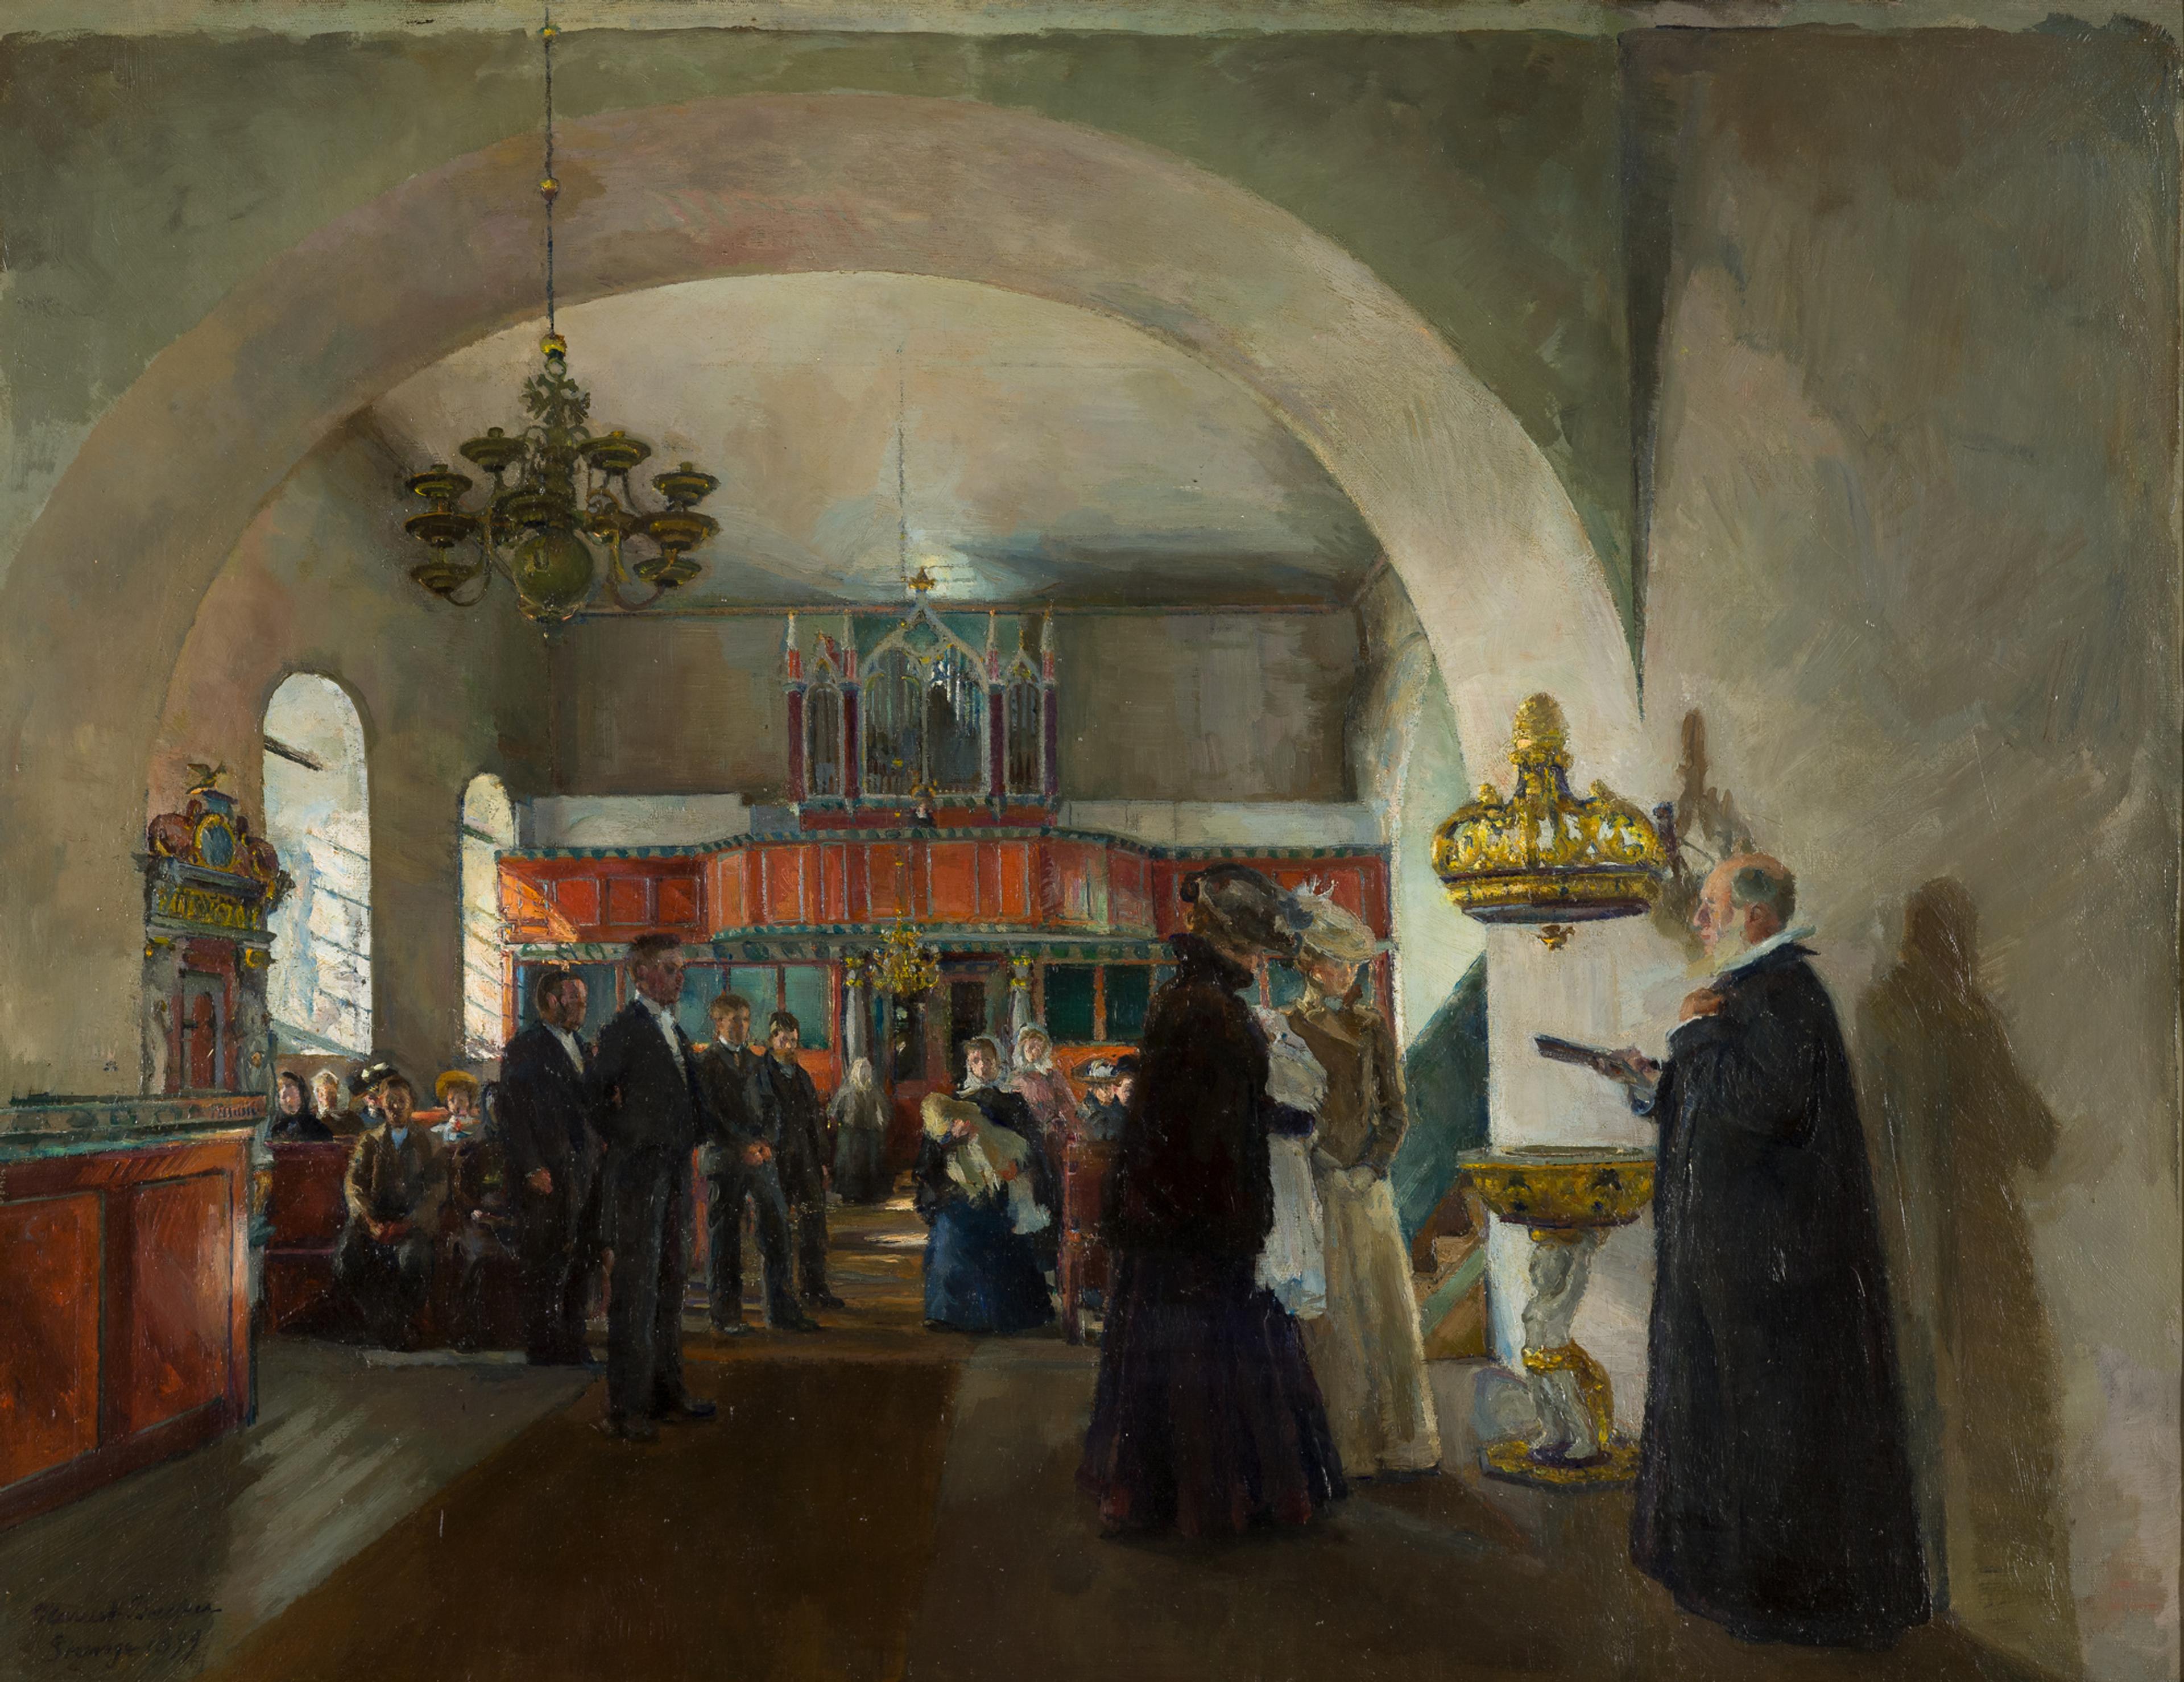 Et maleri som viser interiøret i en kirke, med lyset inn fra venstre side. Vi ser en scene fra en dåp, med to kvinner og en prest ved døpefonten.